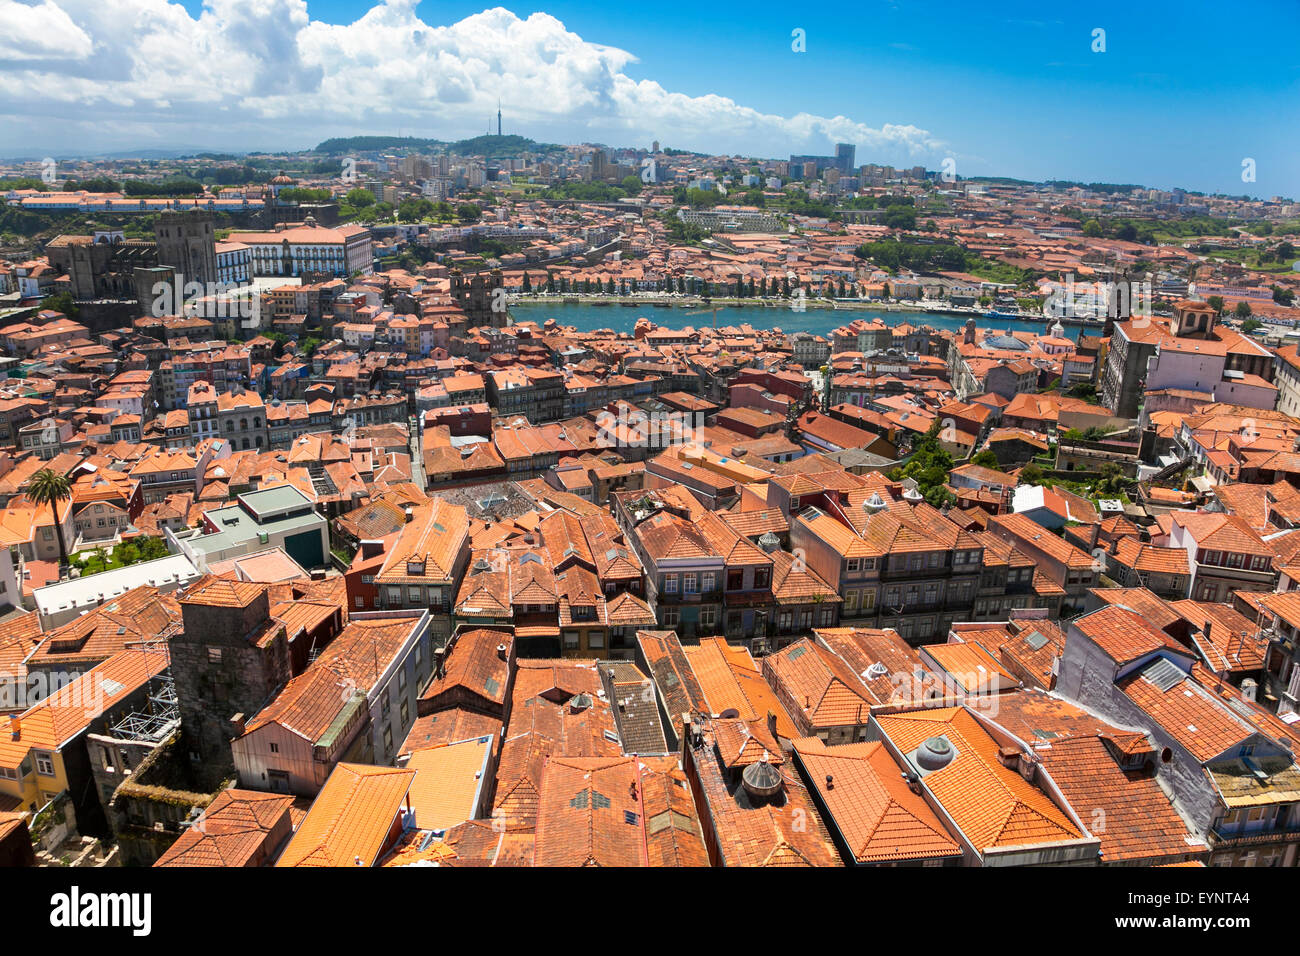 Portugal, Porto - vue sur le fleuve Douro et le centre historique de la ville Banque D'Images